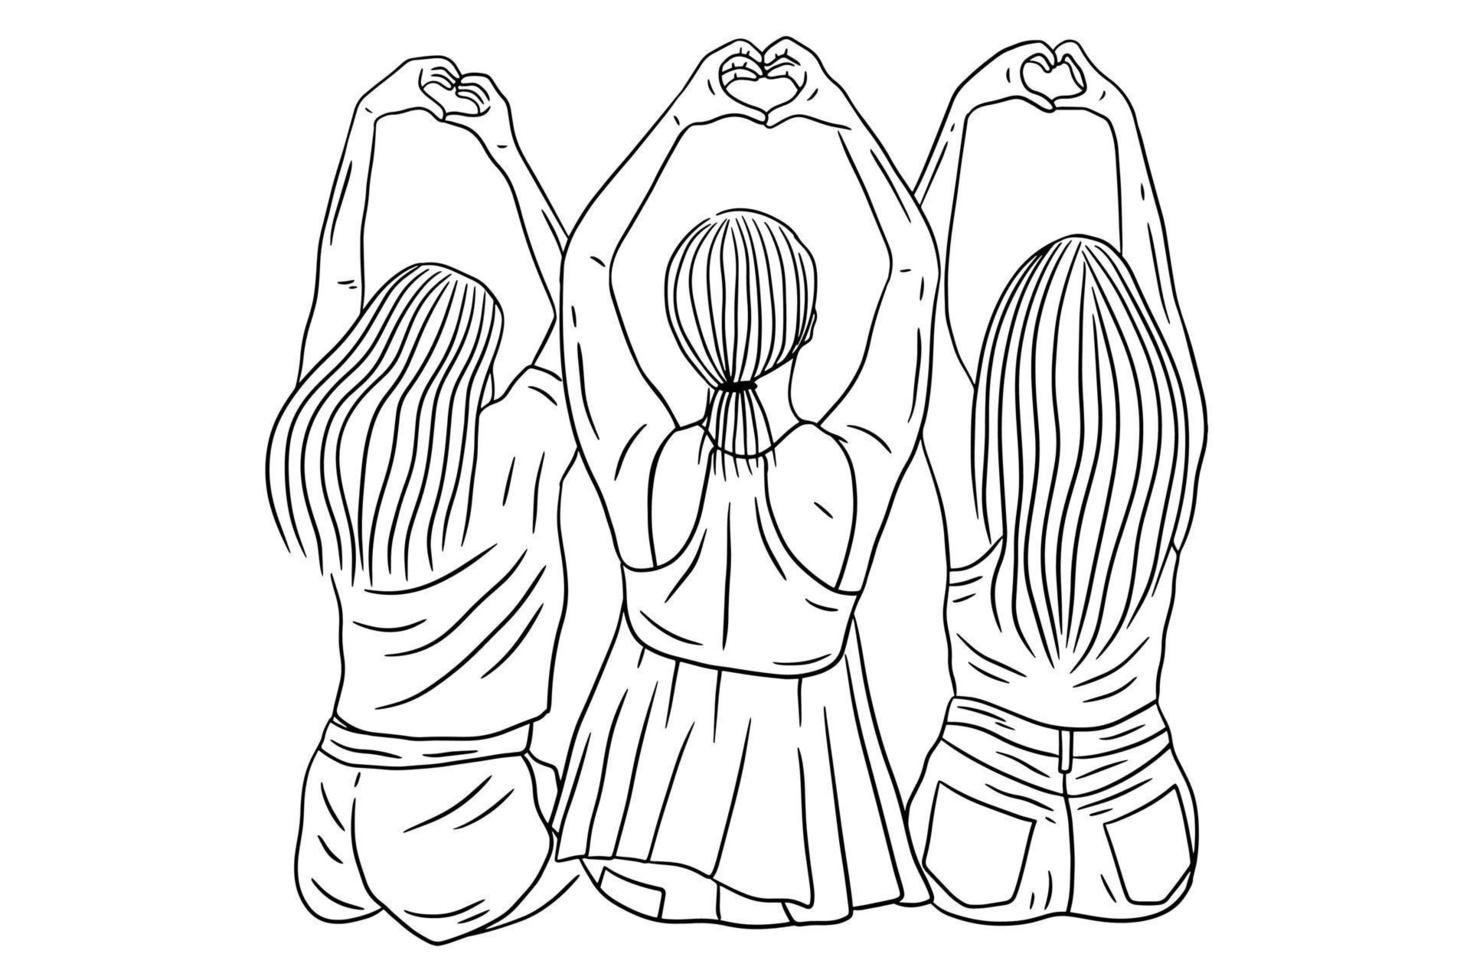 donne felici gruppo ragazza migliore amico amore linea arte disegnata a mano stile illustrazione vettore